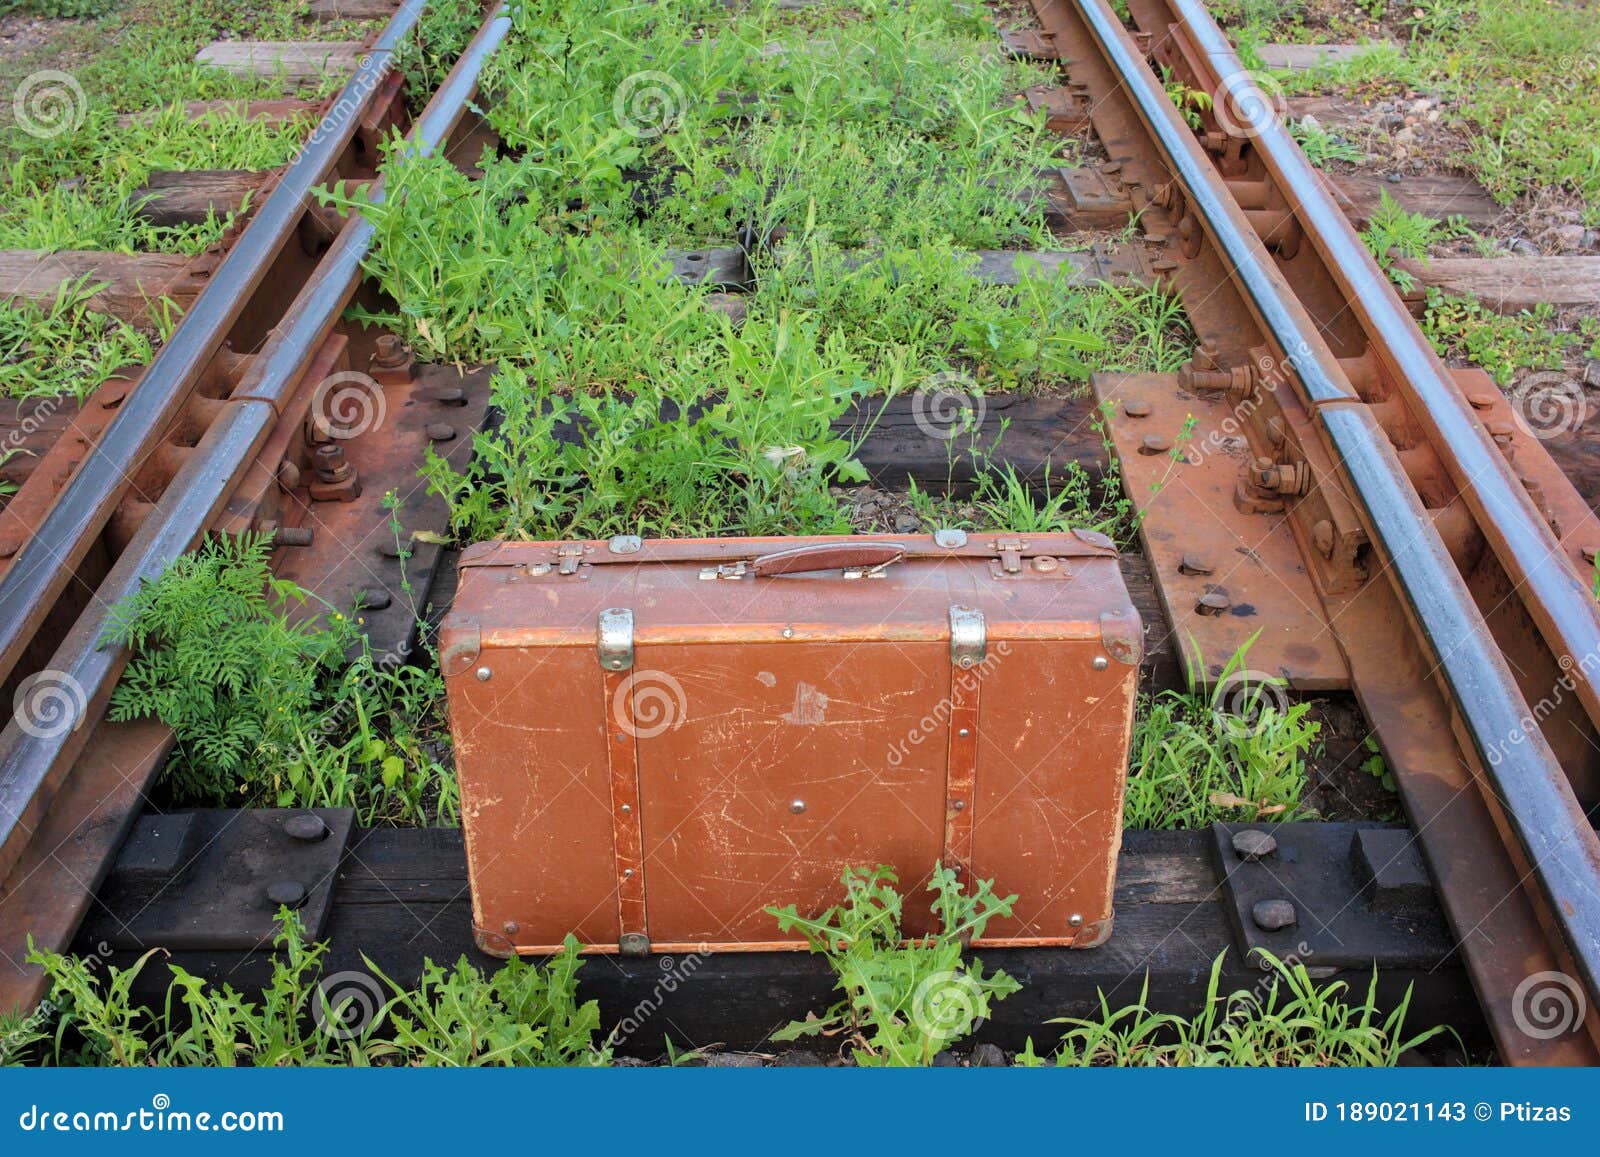 一小，窄片火车轨道runnig通过高草 库存图片. 图片 包括有 å®¤å¤, çº¯, æˆ·å¤, å ¶å­ - 123527129